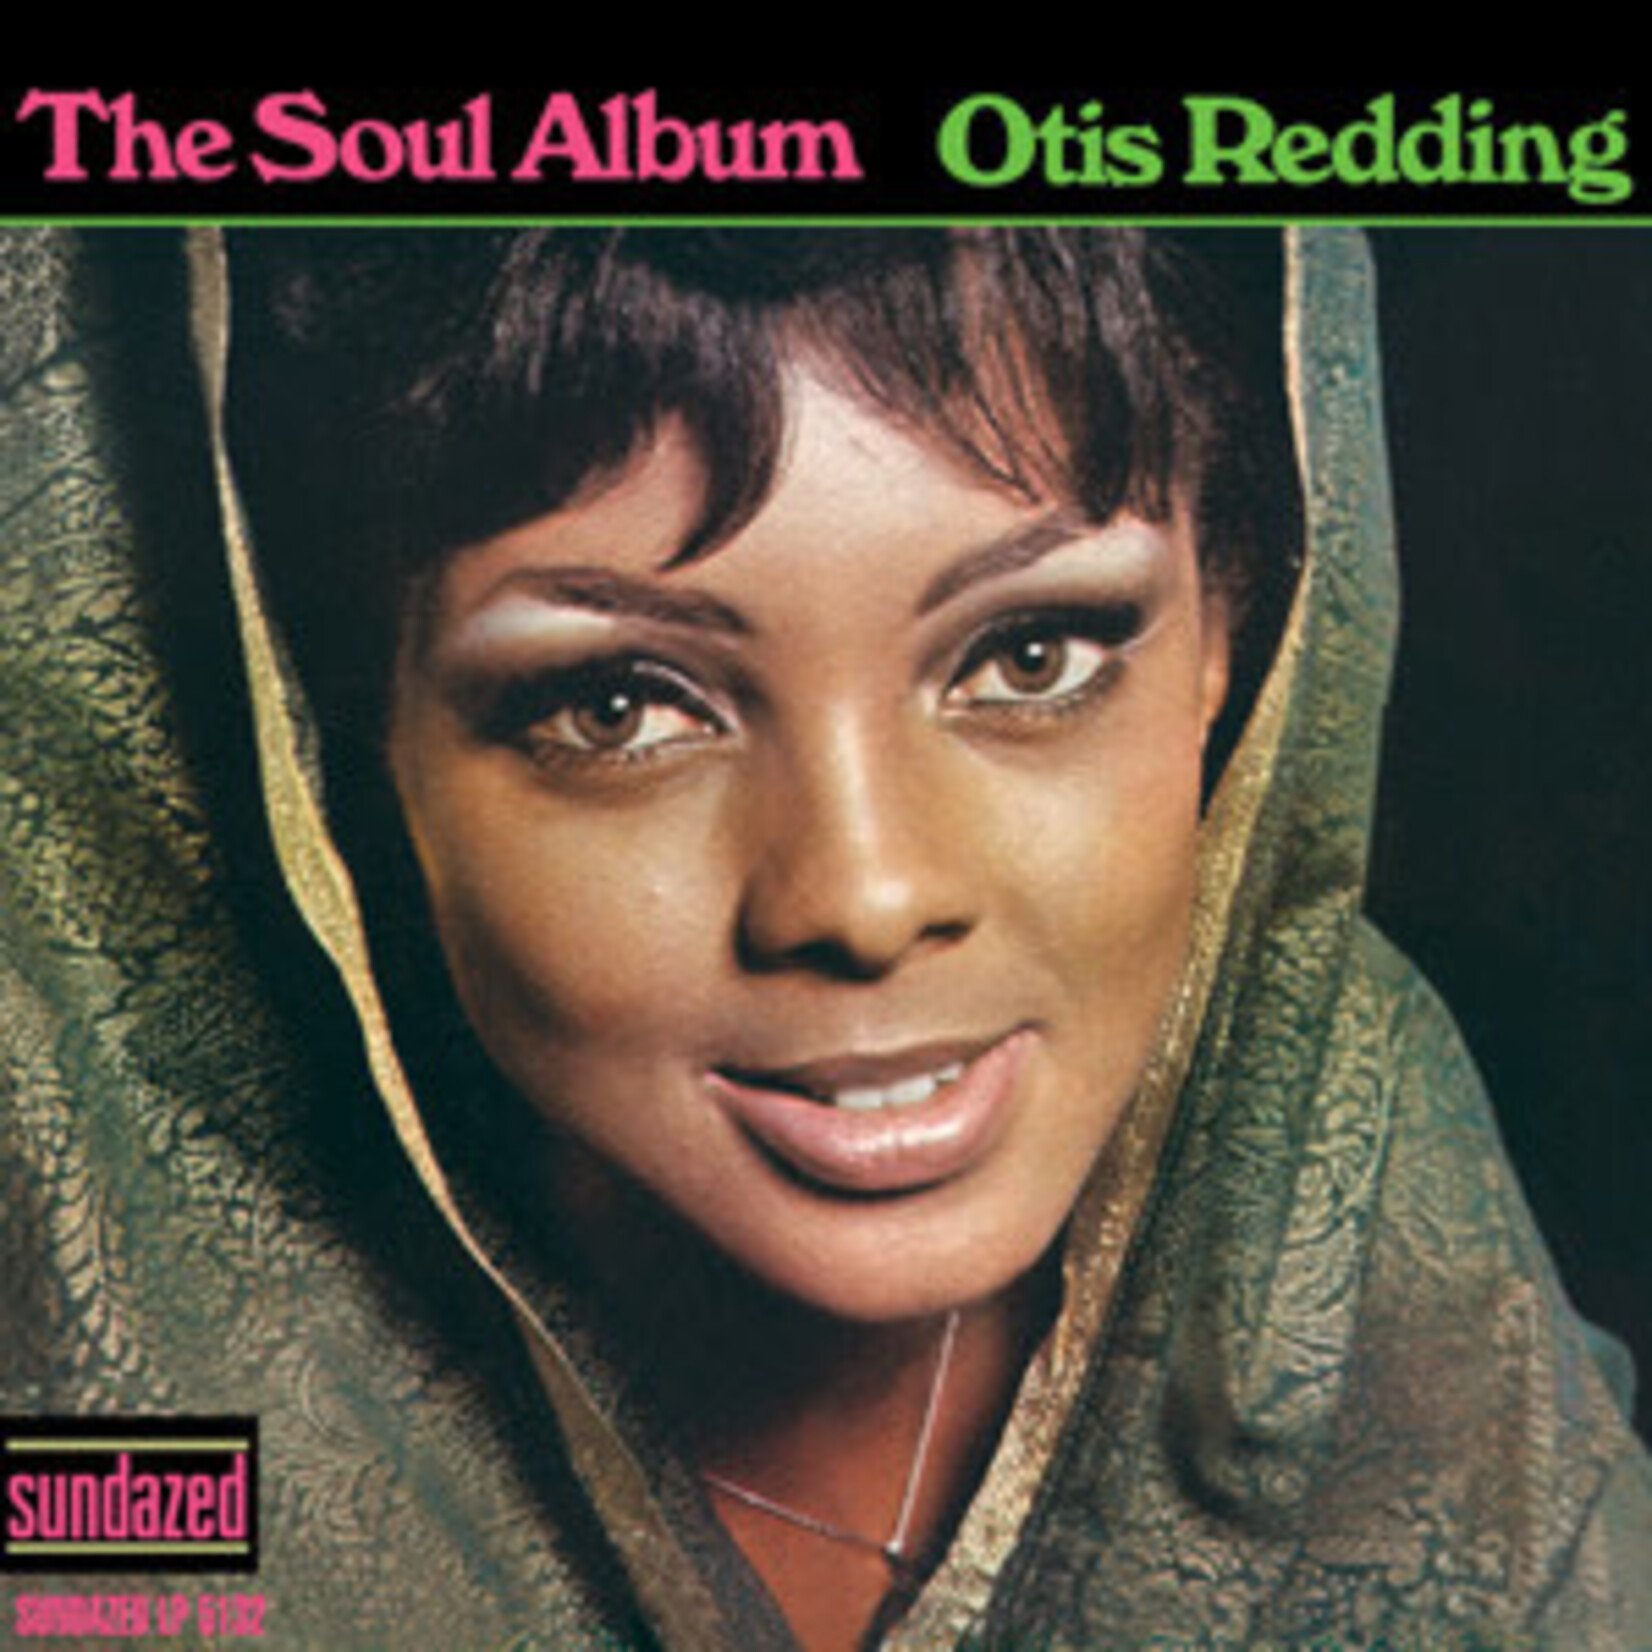 Atlantic Otis Redding - The Soul Album (LP)